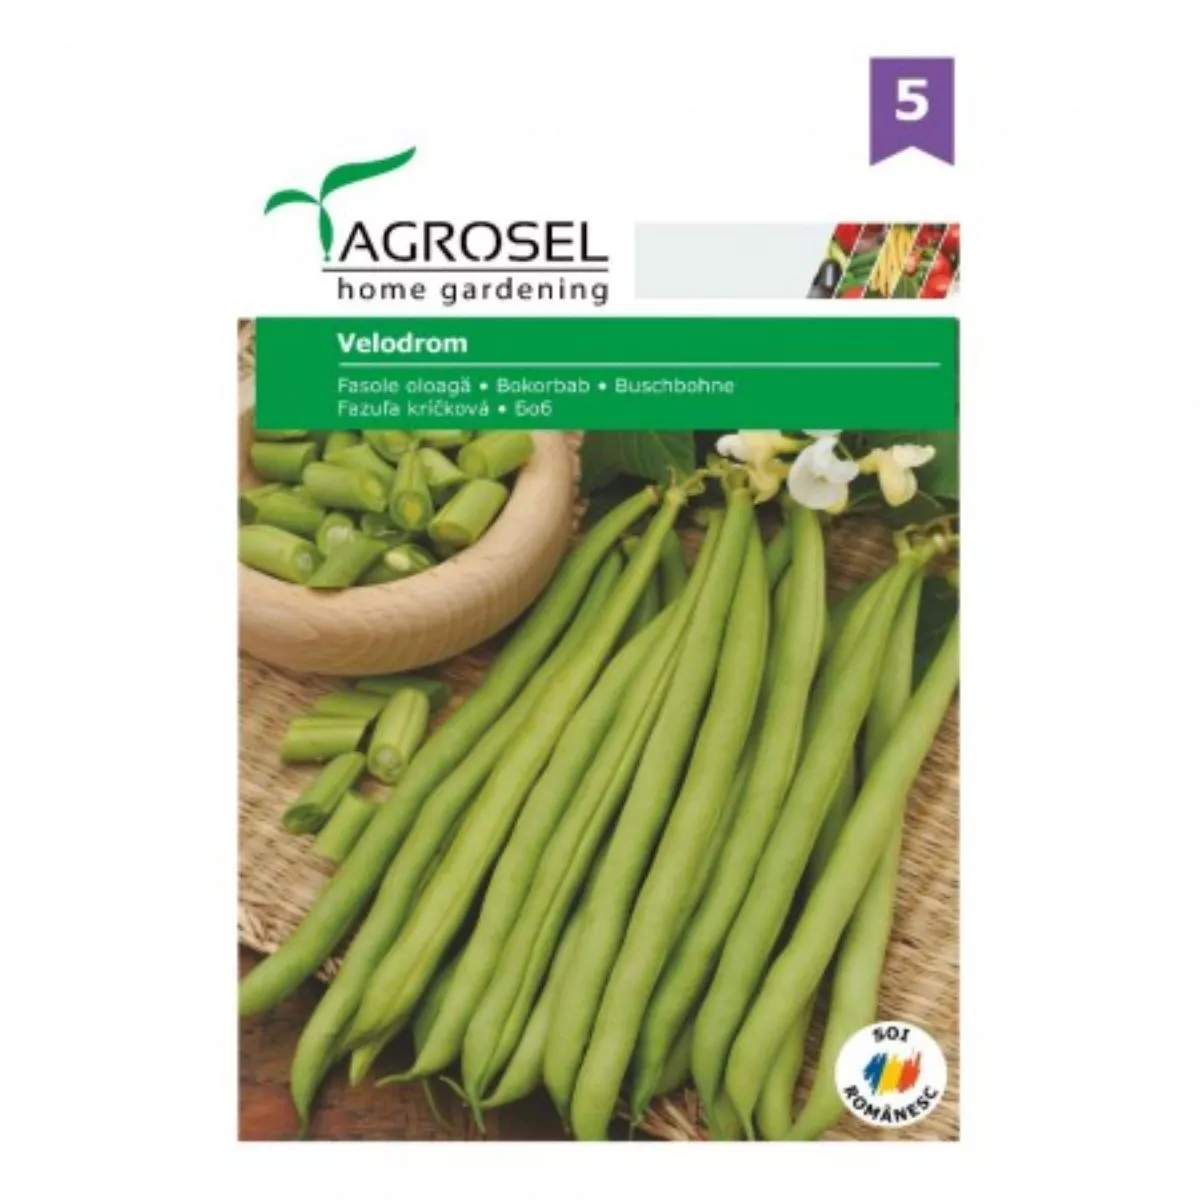 Seminte Fasole oloaga verde Velodrom (păstaie verde) Agrosel 250 g 1